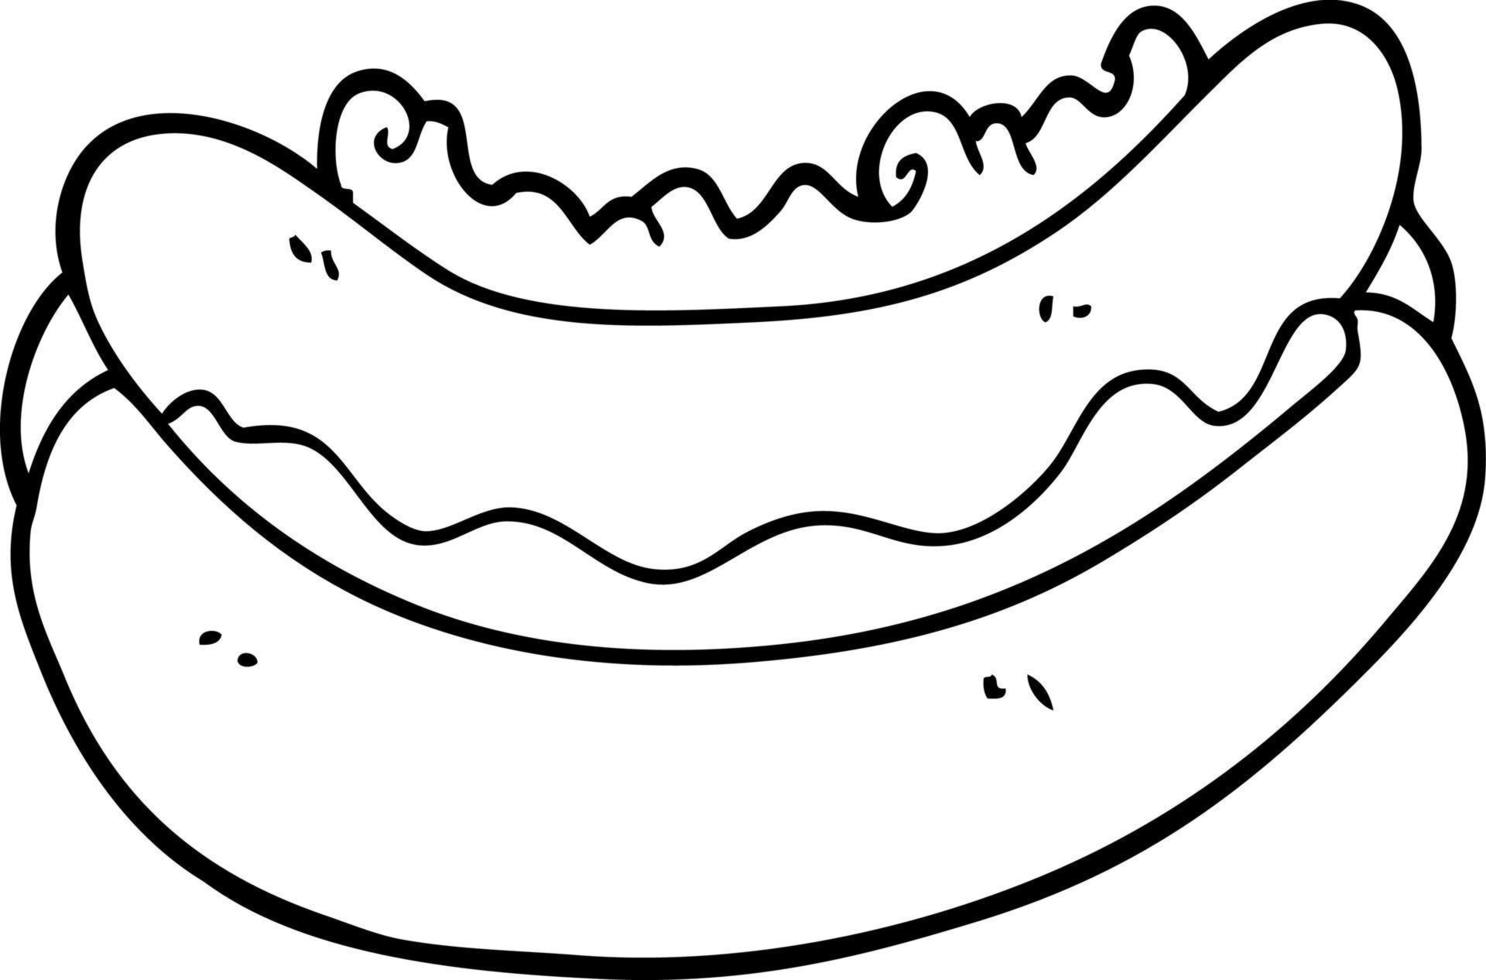 Strichzeichnung Cartoon eines Hotdogs vektor